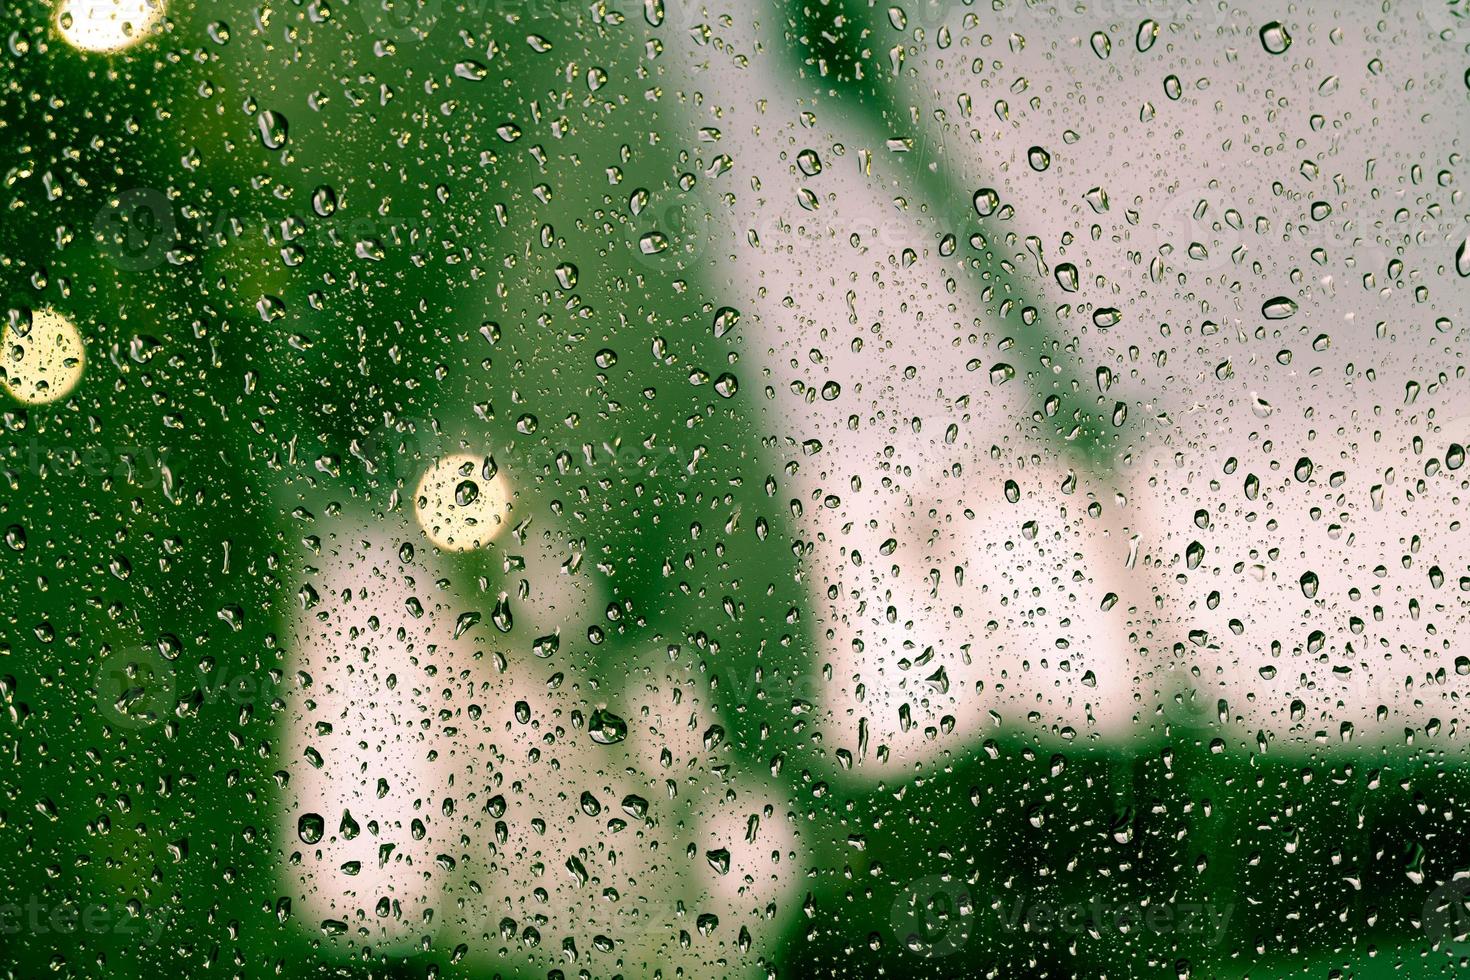 Regentropfen am Fenster foto